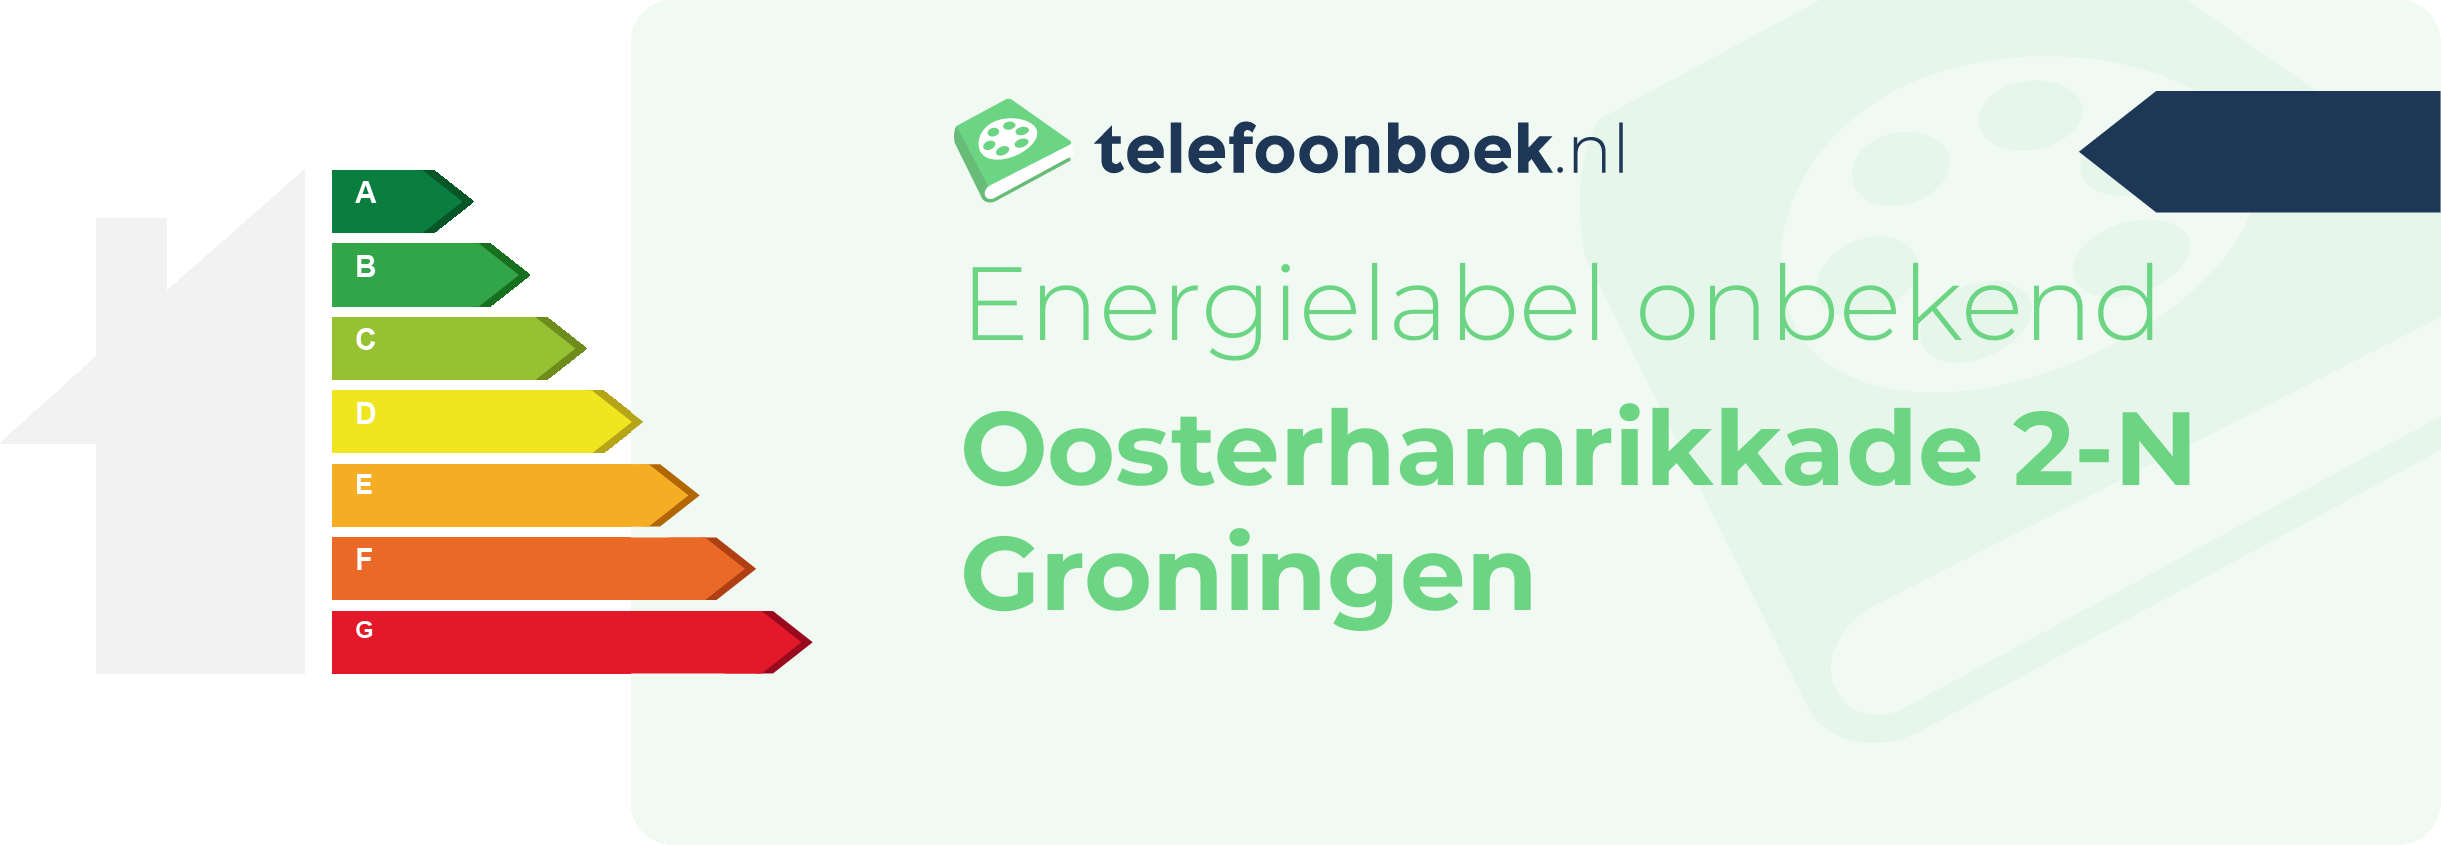 Energielabel Oosterhamrikkade 2-N Groningen